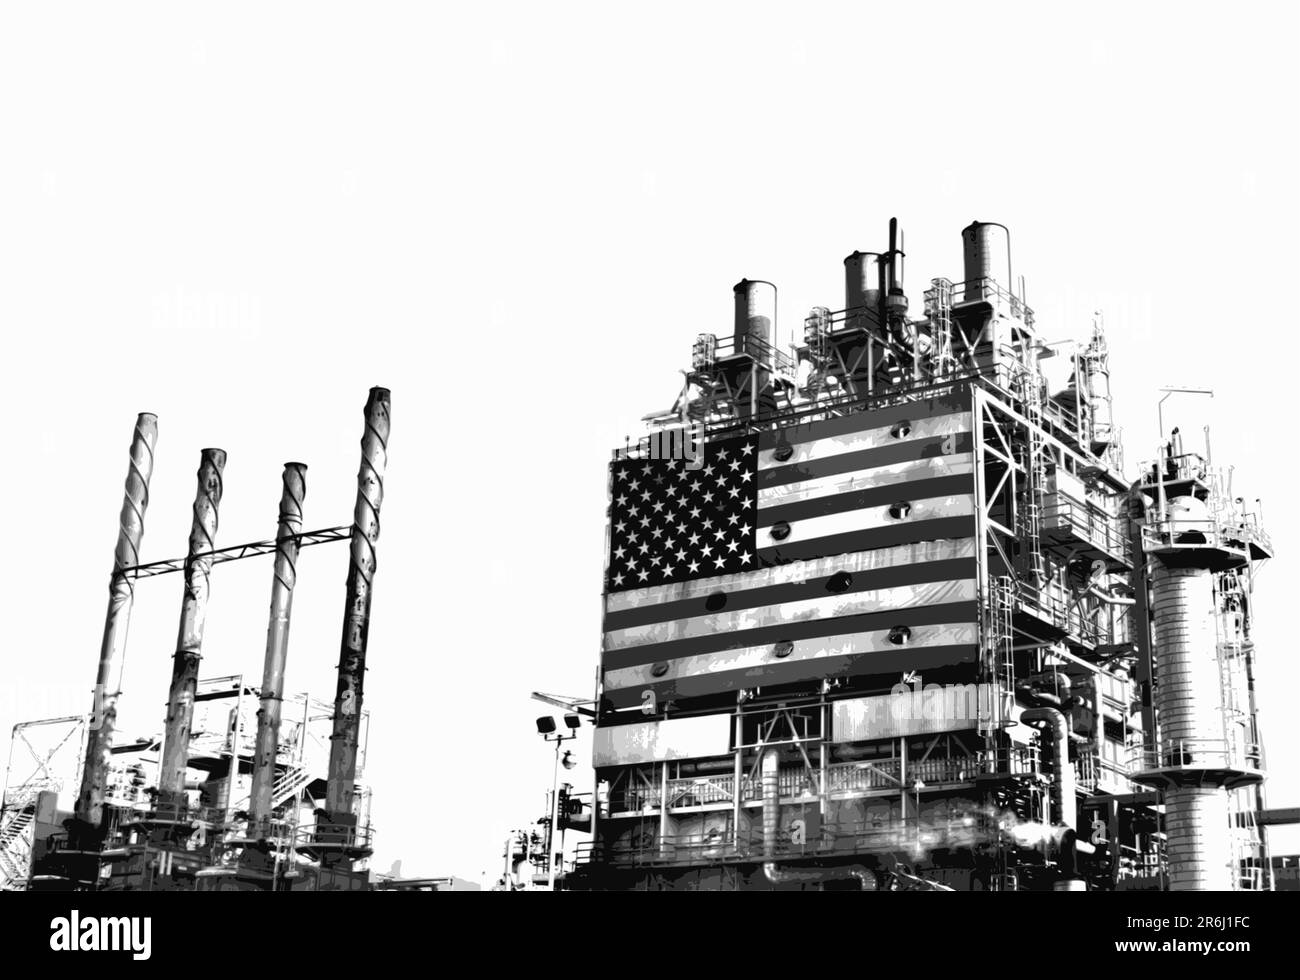 Parte del complejo de refinería de petróleo con la bandera americana grande exhibida. Humos saliendo de la chimenea. Ilustración del Vector